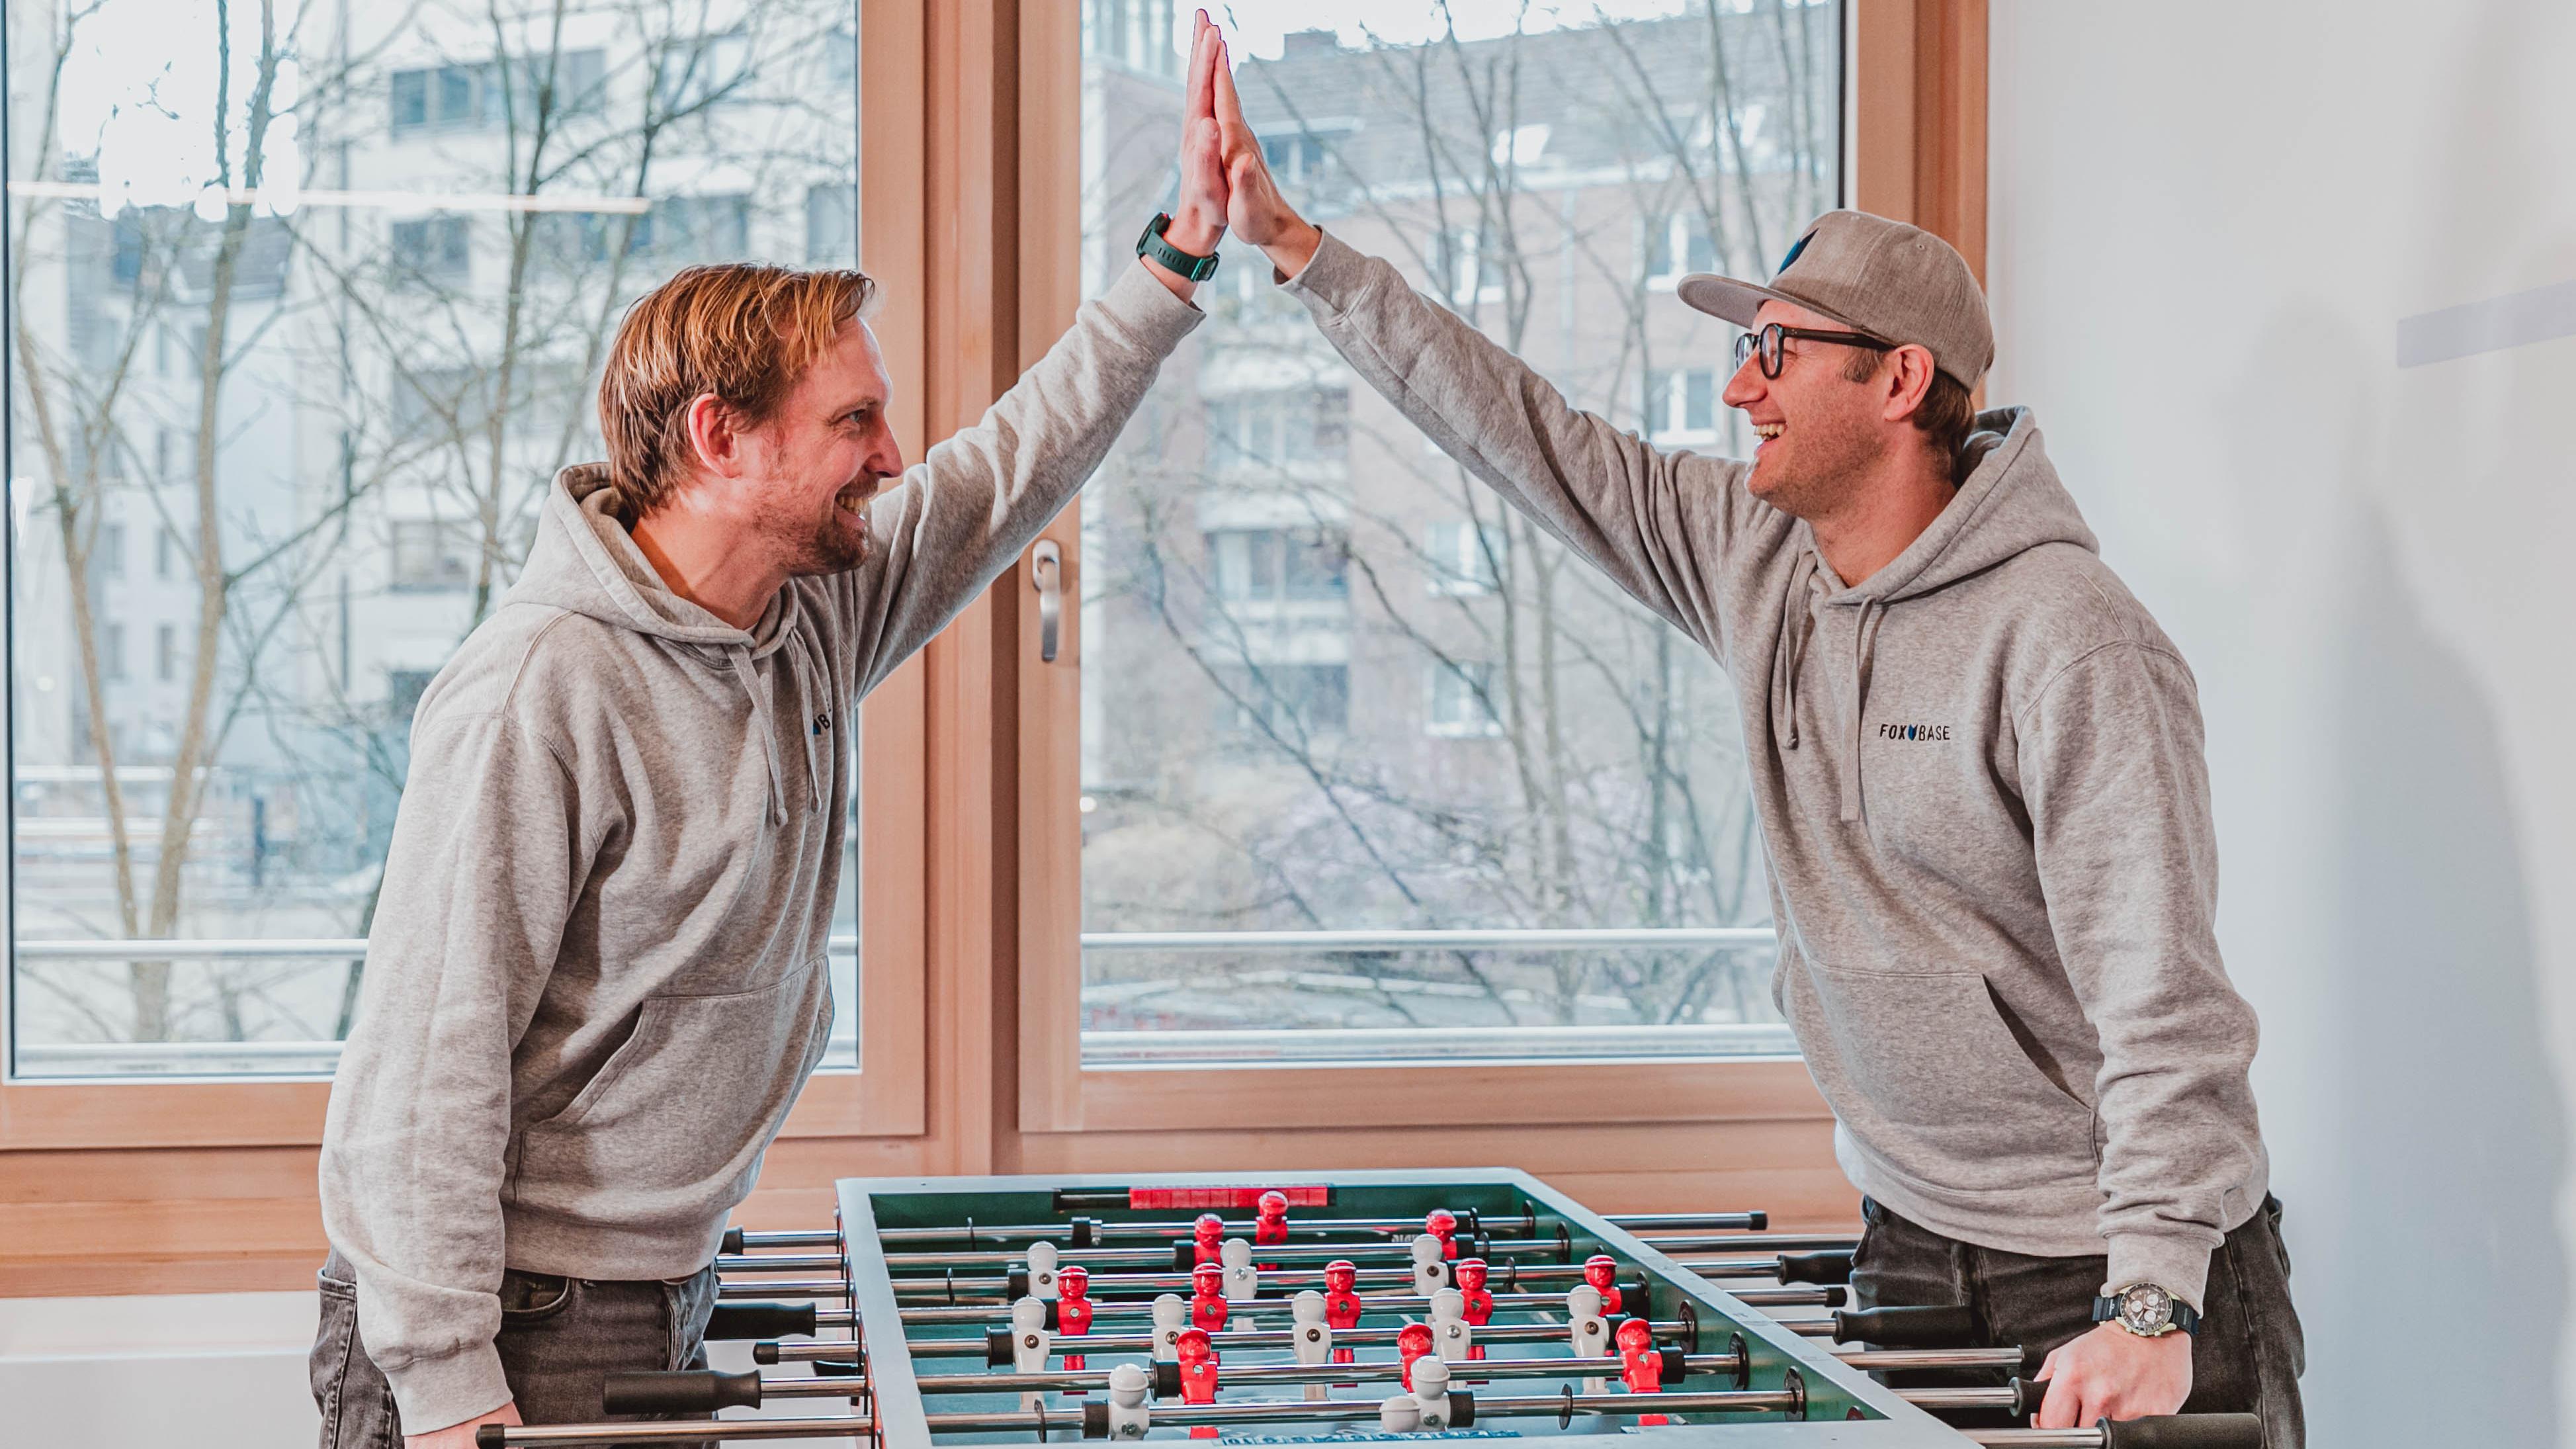 Benjamin Dammertz und Carsten Dolch beim Tischfußball